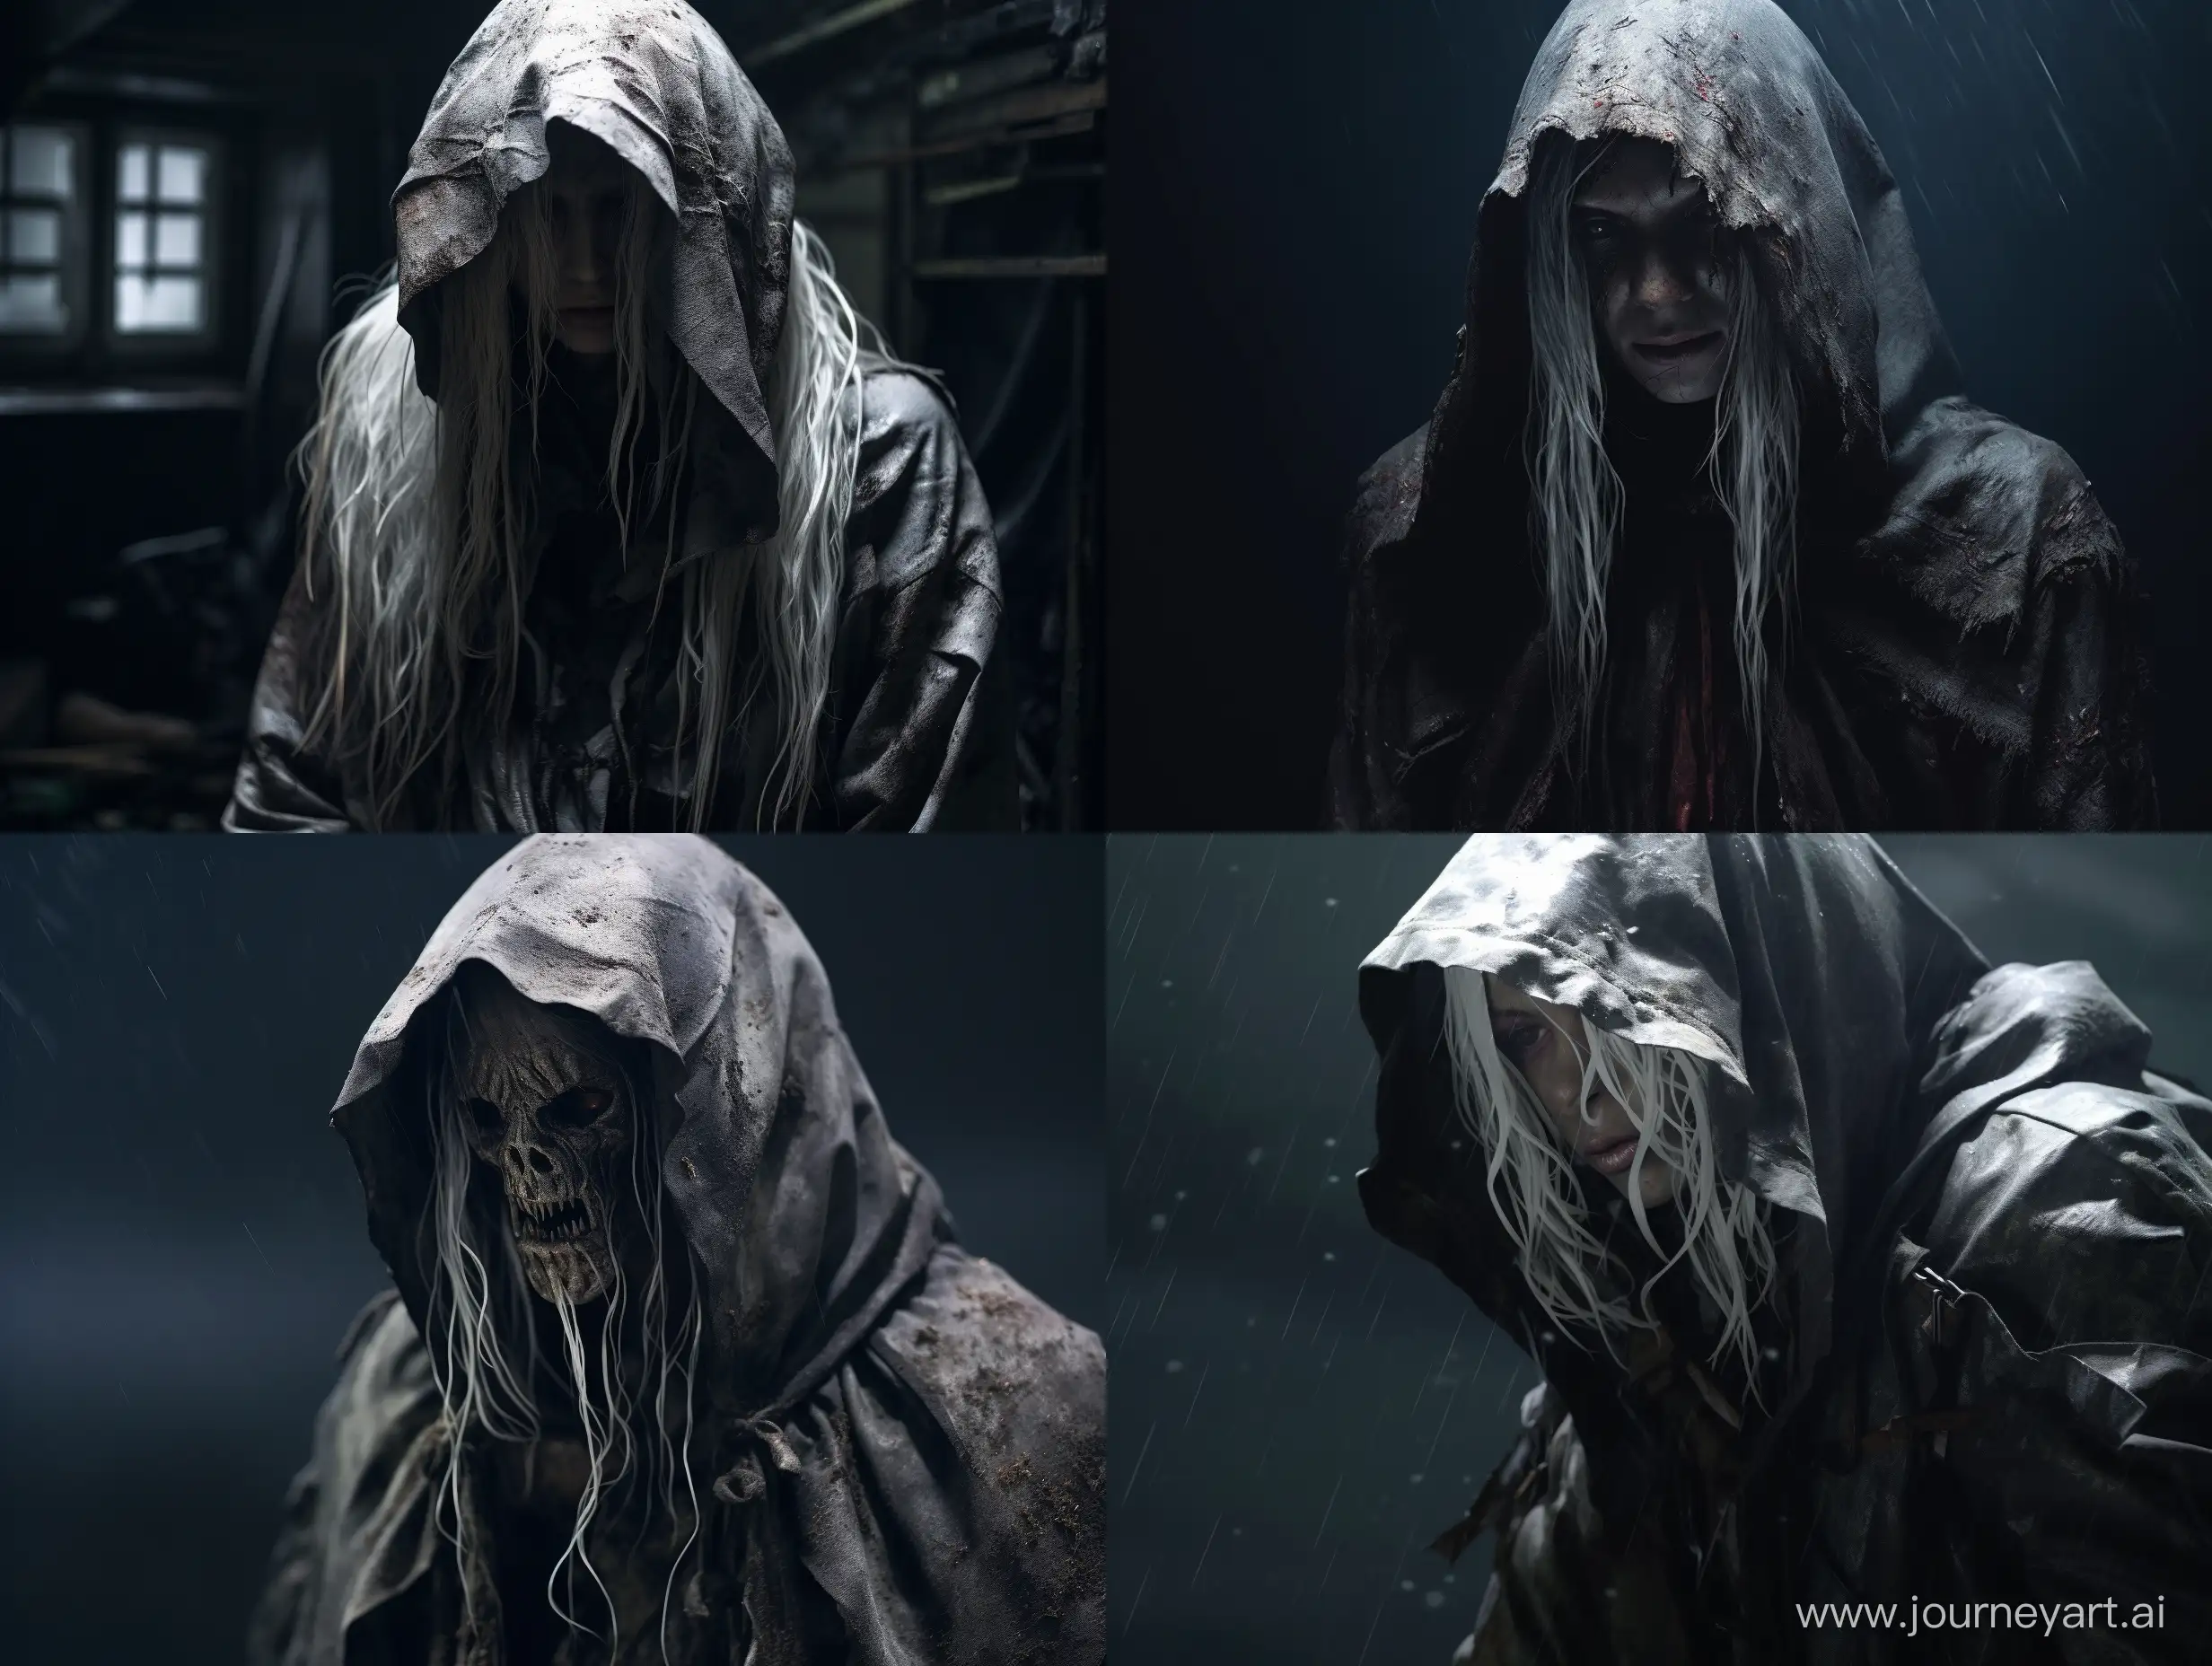 Mysterious-Hooded-Elder-with-Torn-White-Hair-in-Dark-Atmosphere